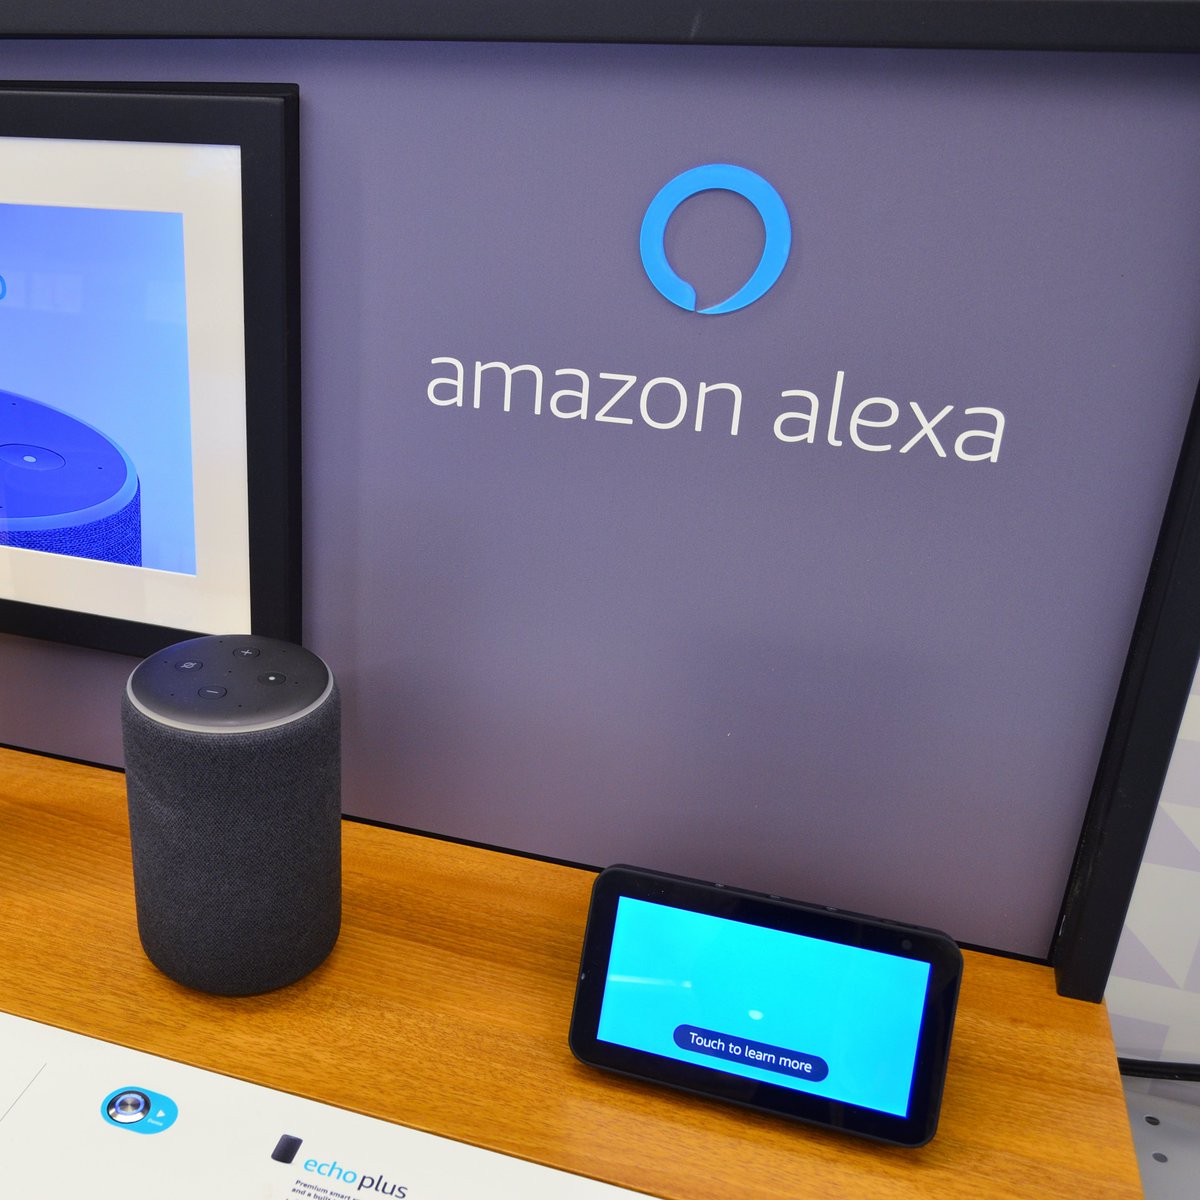 Amazon desarrolla una versión mejorada de Alexa basada en inteligencia artificial (IA). Conoce las novedades bit.ly/3vOtxFD #Amazon #Alexa #IA #tecnología #geek